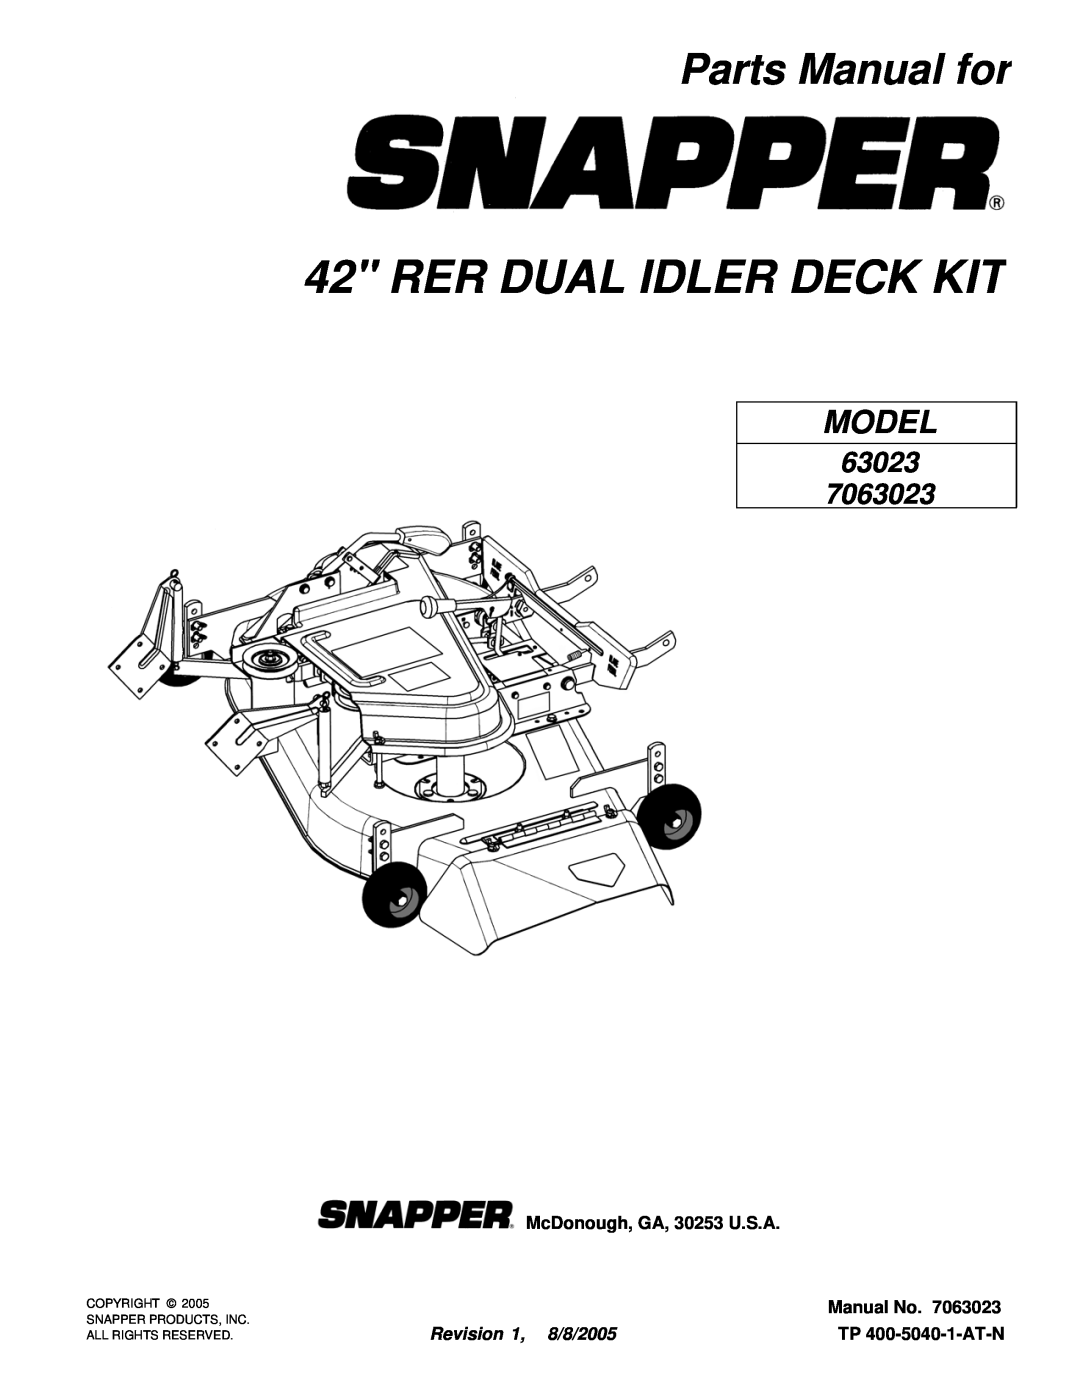 Snapper 63023 manual Parts Manual for, McDonough, GA, 30253 U.S.A, Manual No, Revision 1, 8/8/2005, TP 400-5040-1-AT-N 